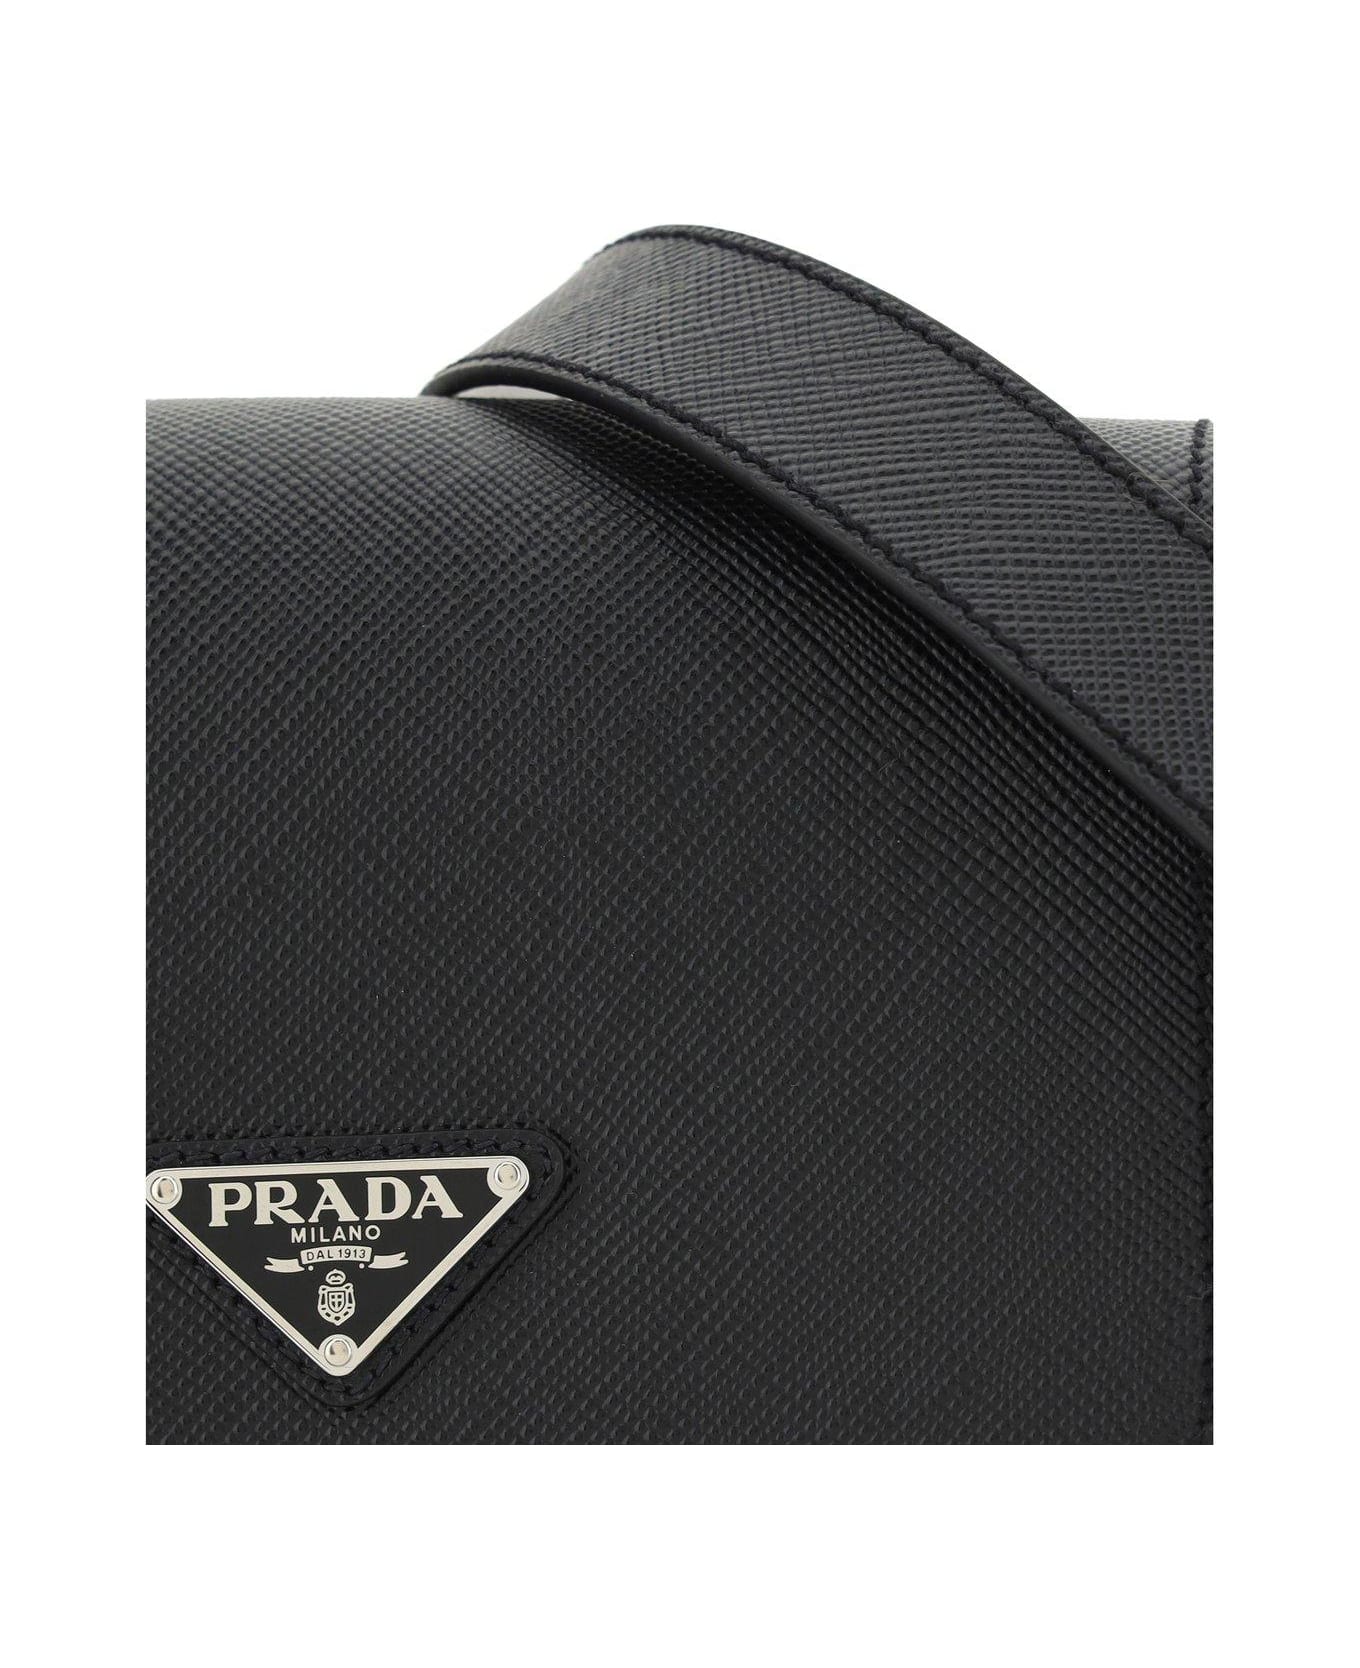 Prada Saffiano Triangle Logo Foldover Top Shoulder Bag